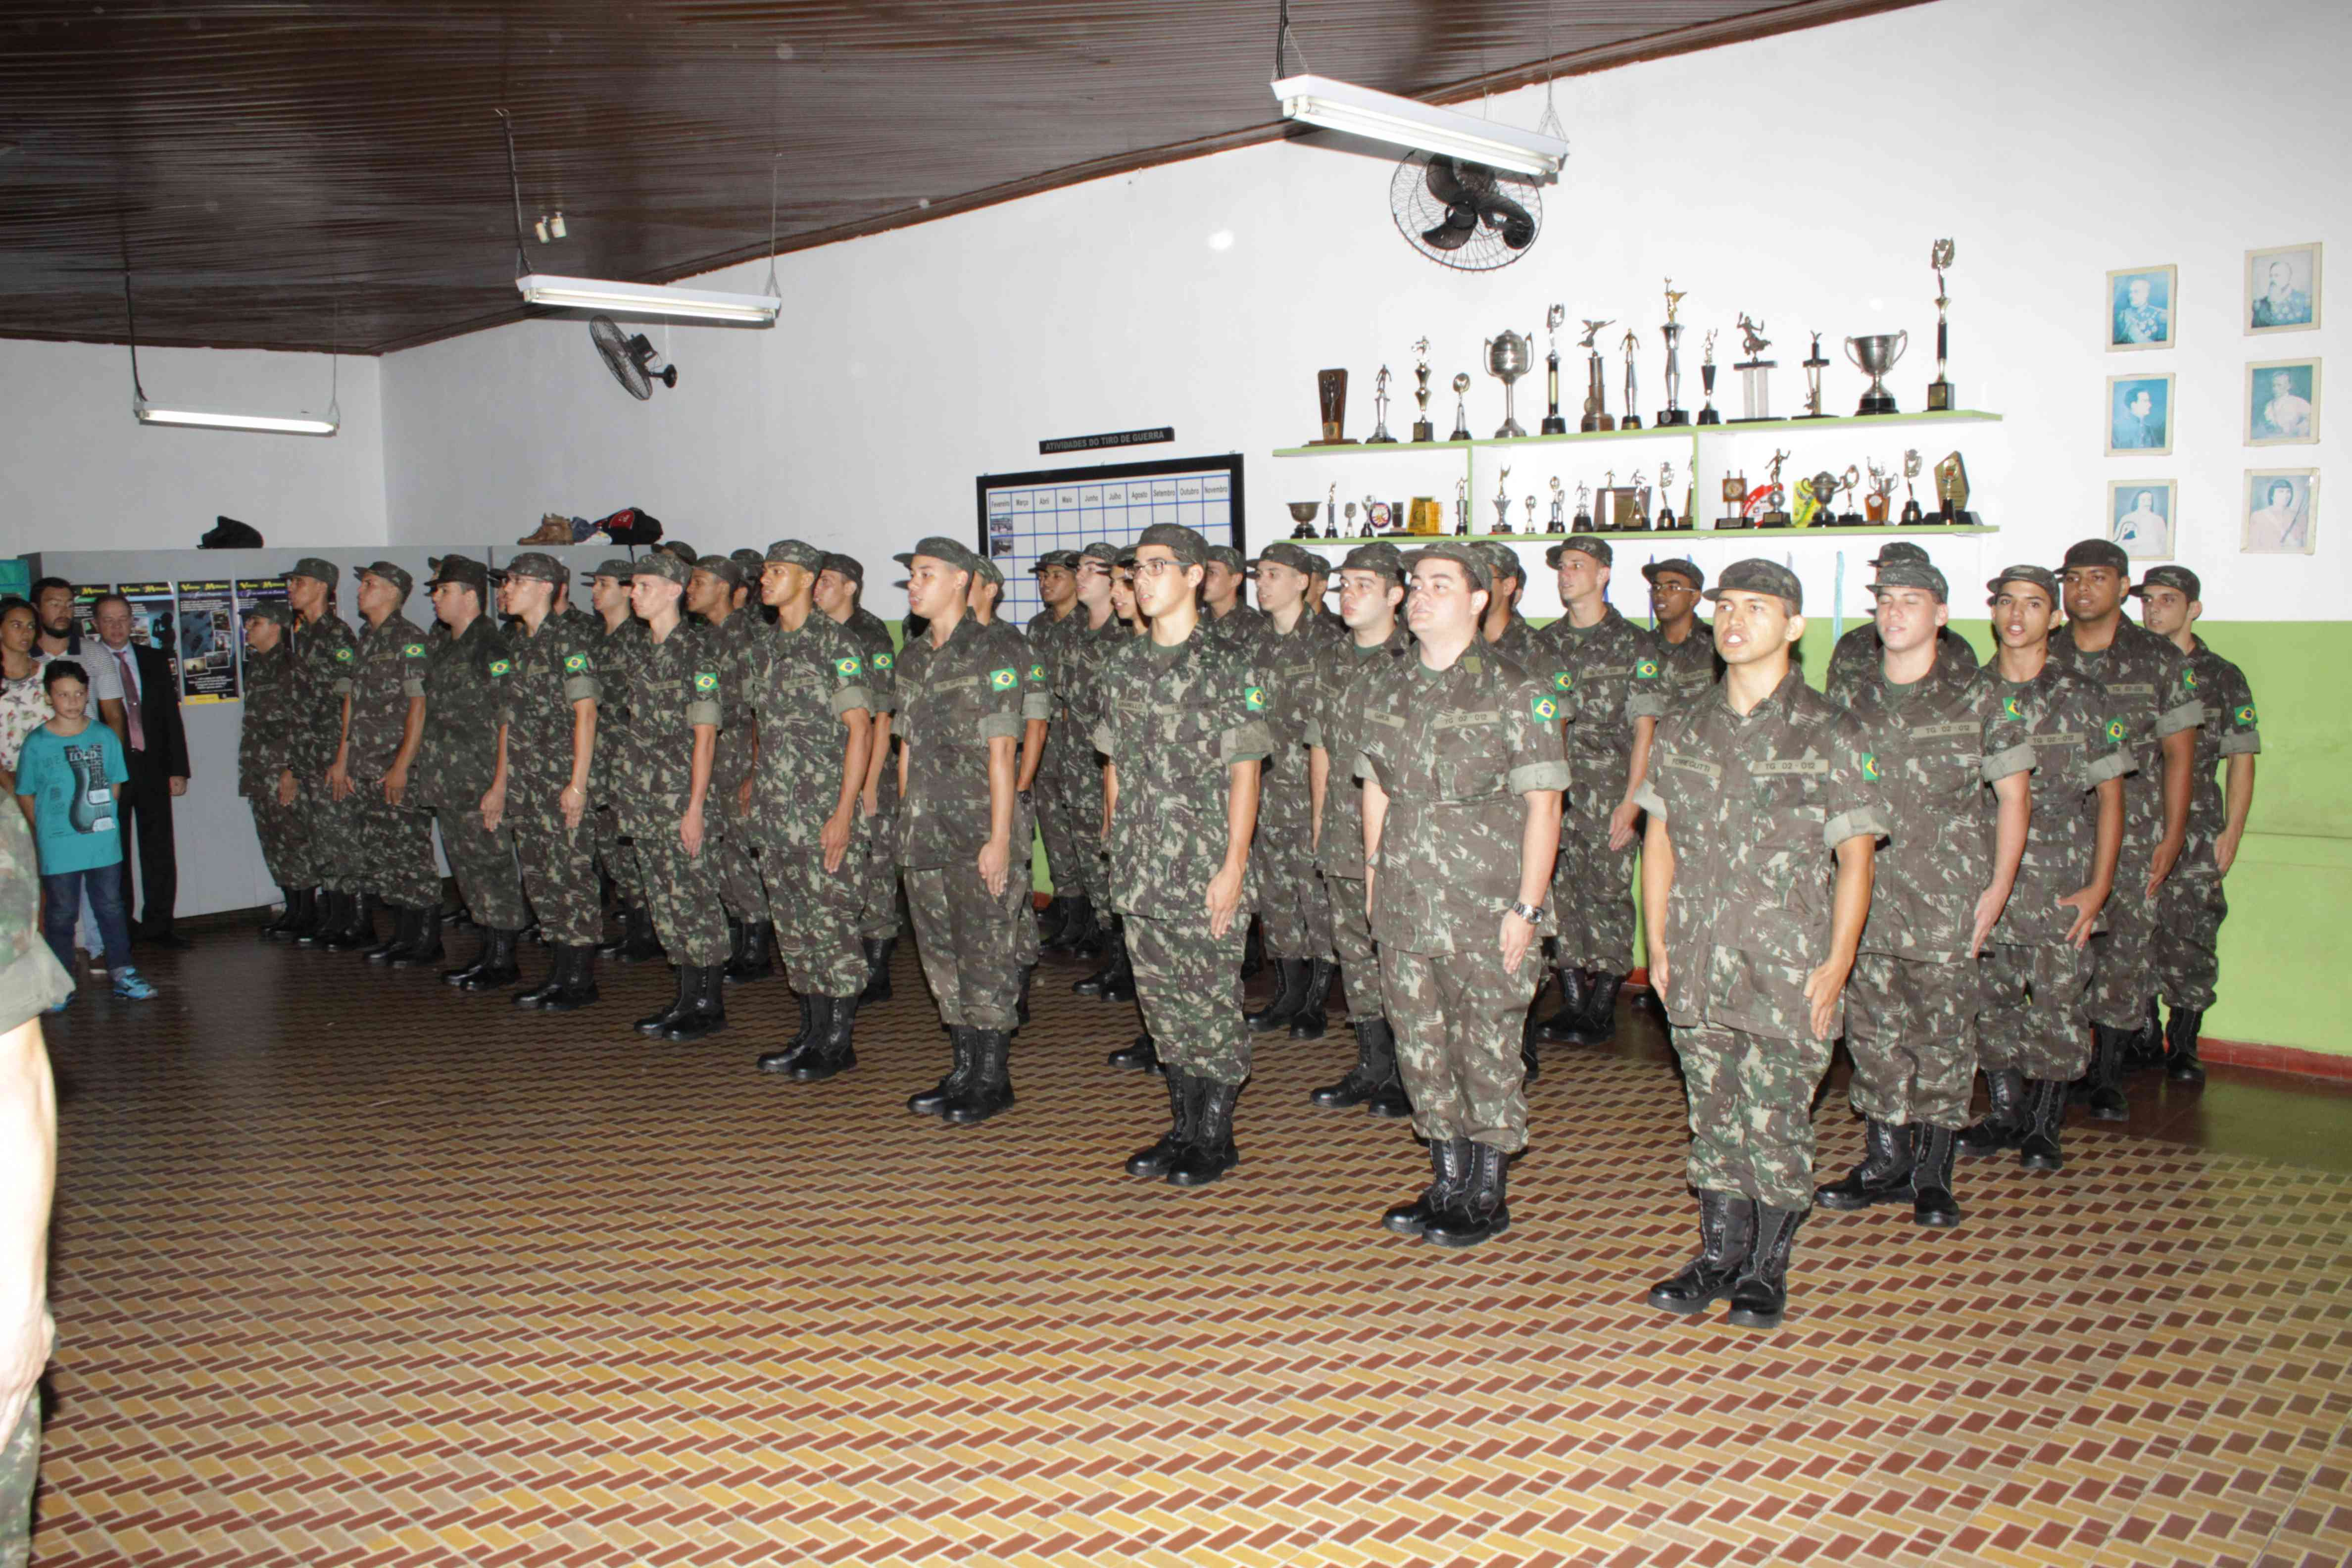 Reservistas deverão se apresentar na Junta de Serviço Militar de 9 a